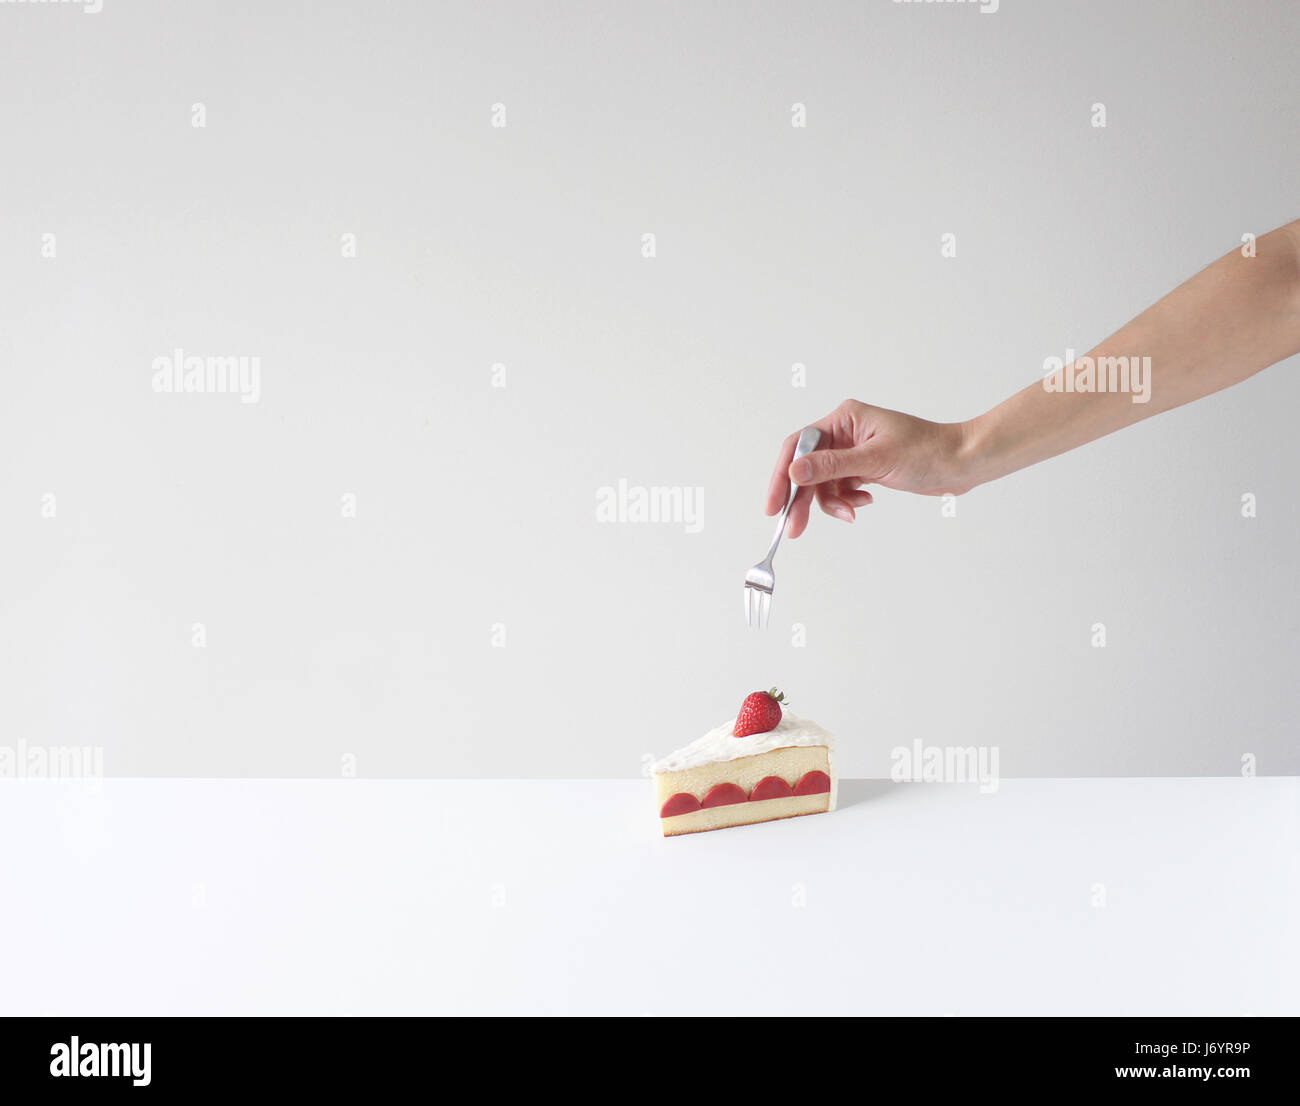 Mano sosteniendo un tenedor a punto de comer un trozo de pastel Foto de stock